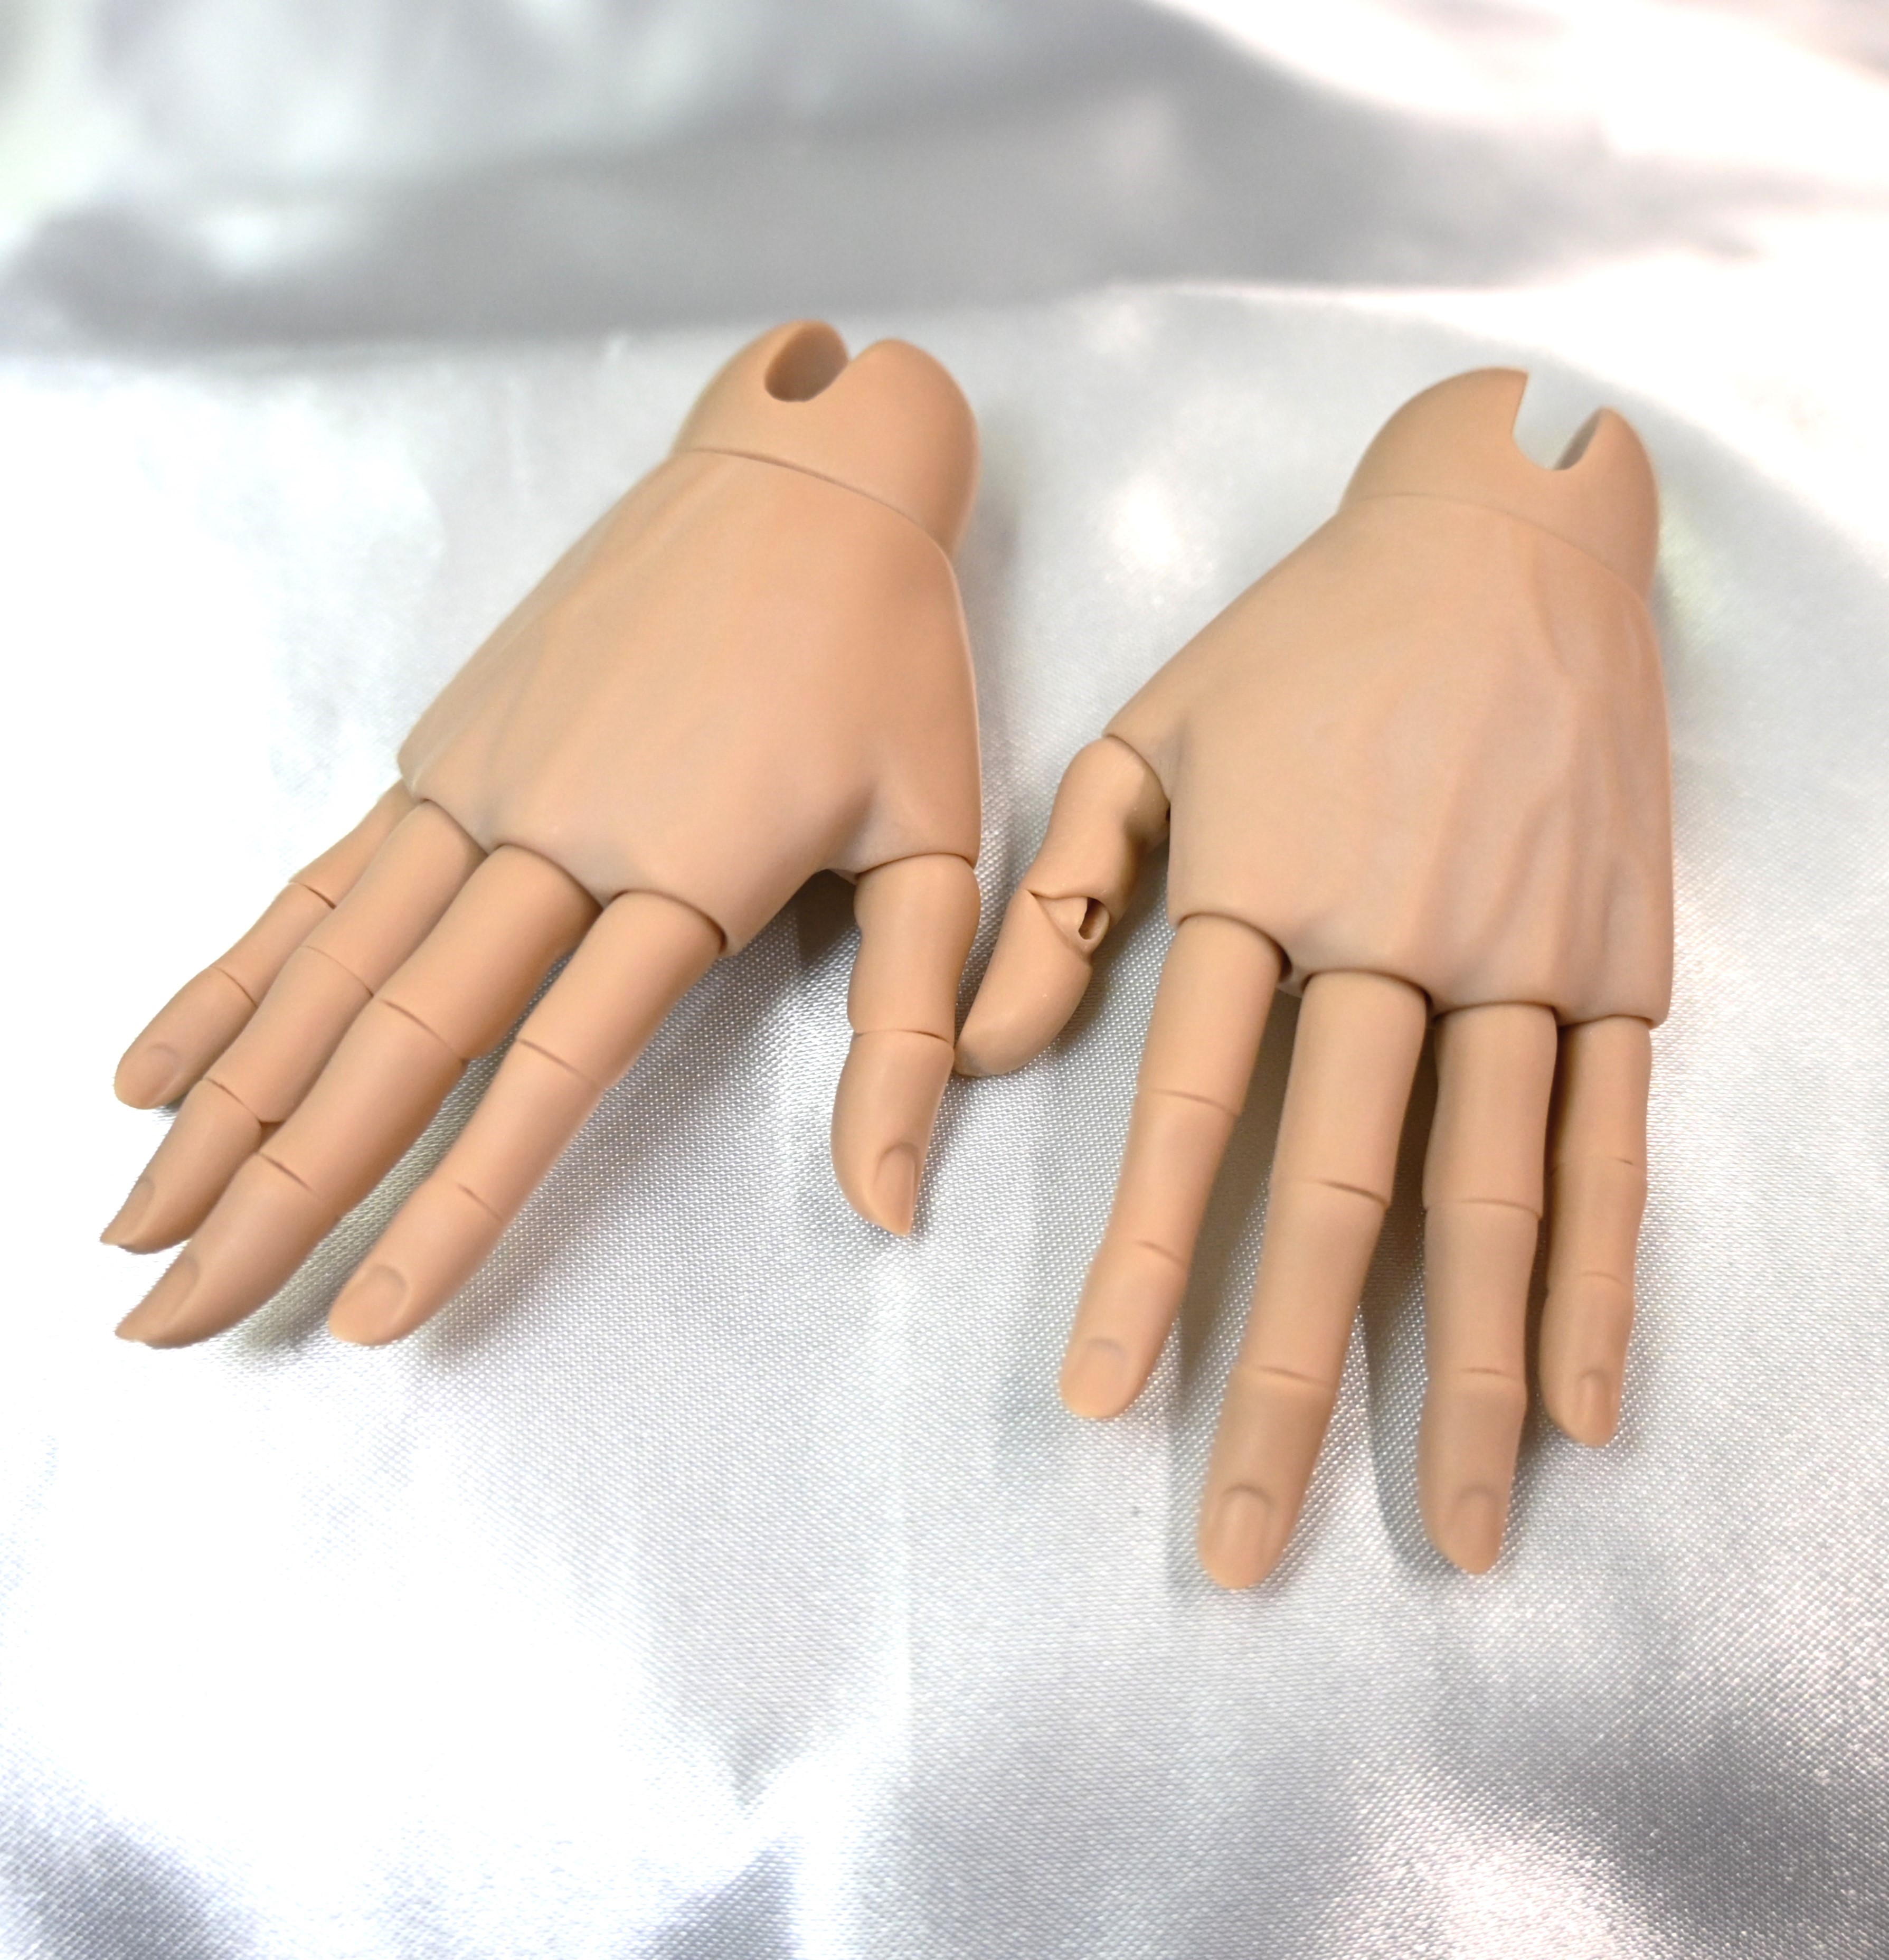 【70cm】 DIKADOLL / Senior hand parts B(short nail)Tan Skin